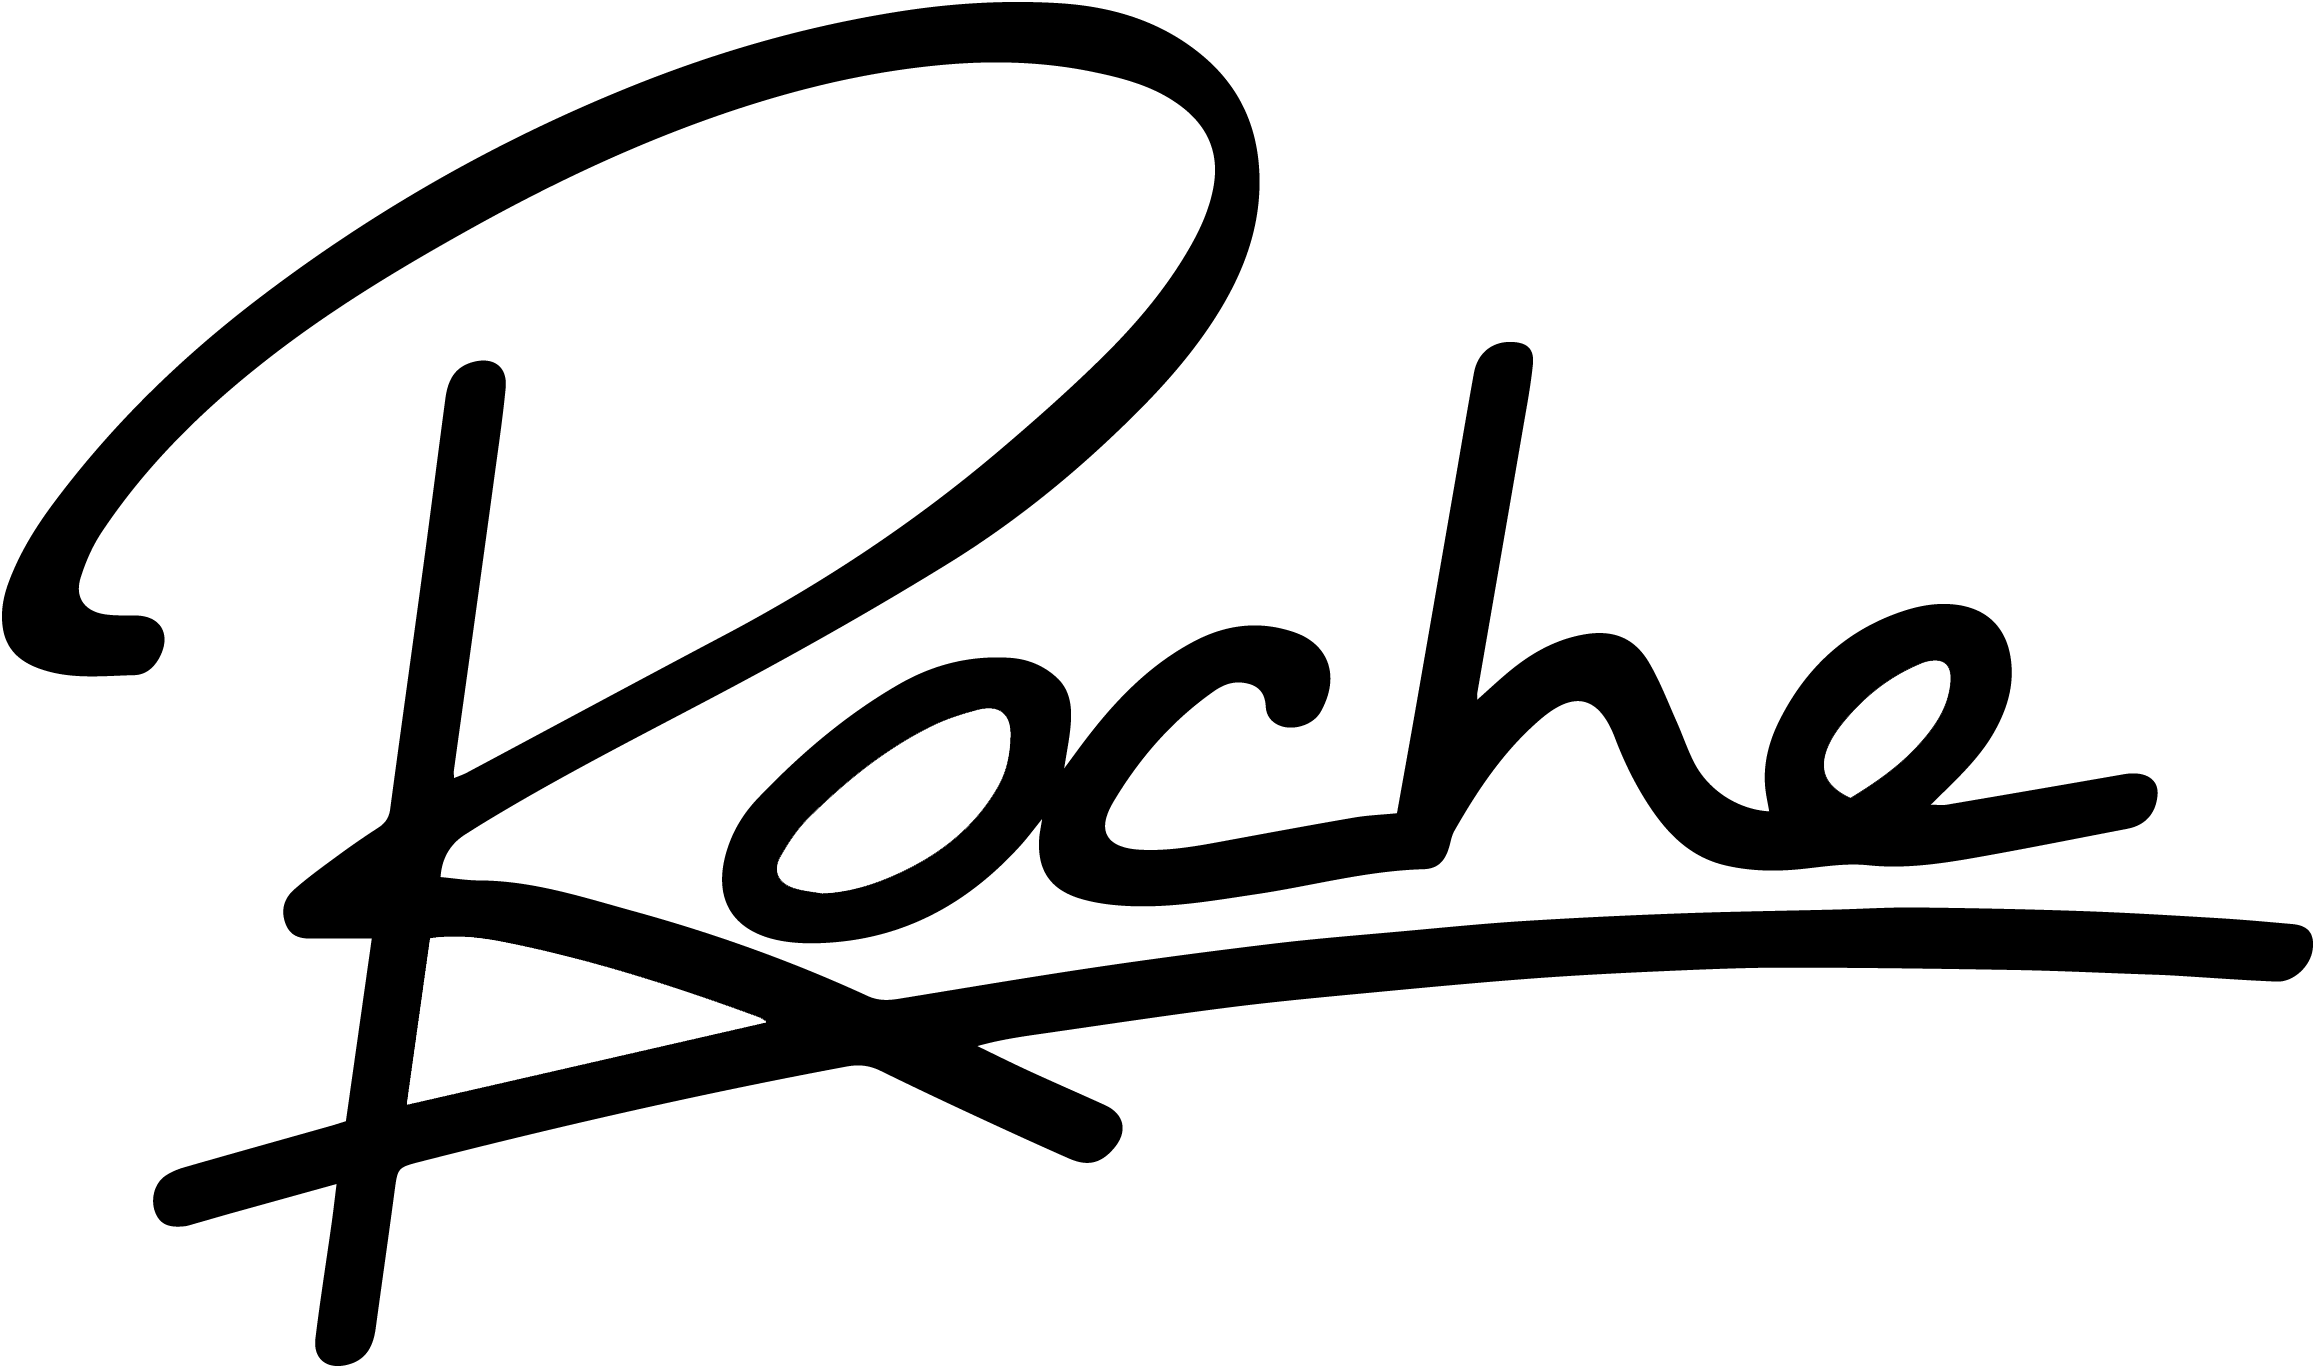 Roche Musique